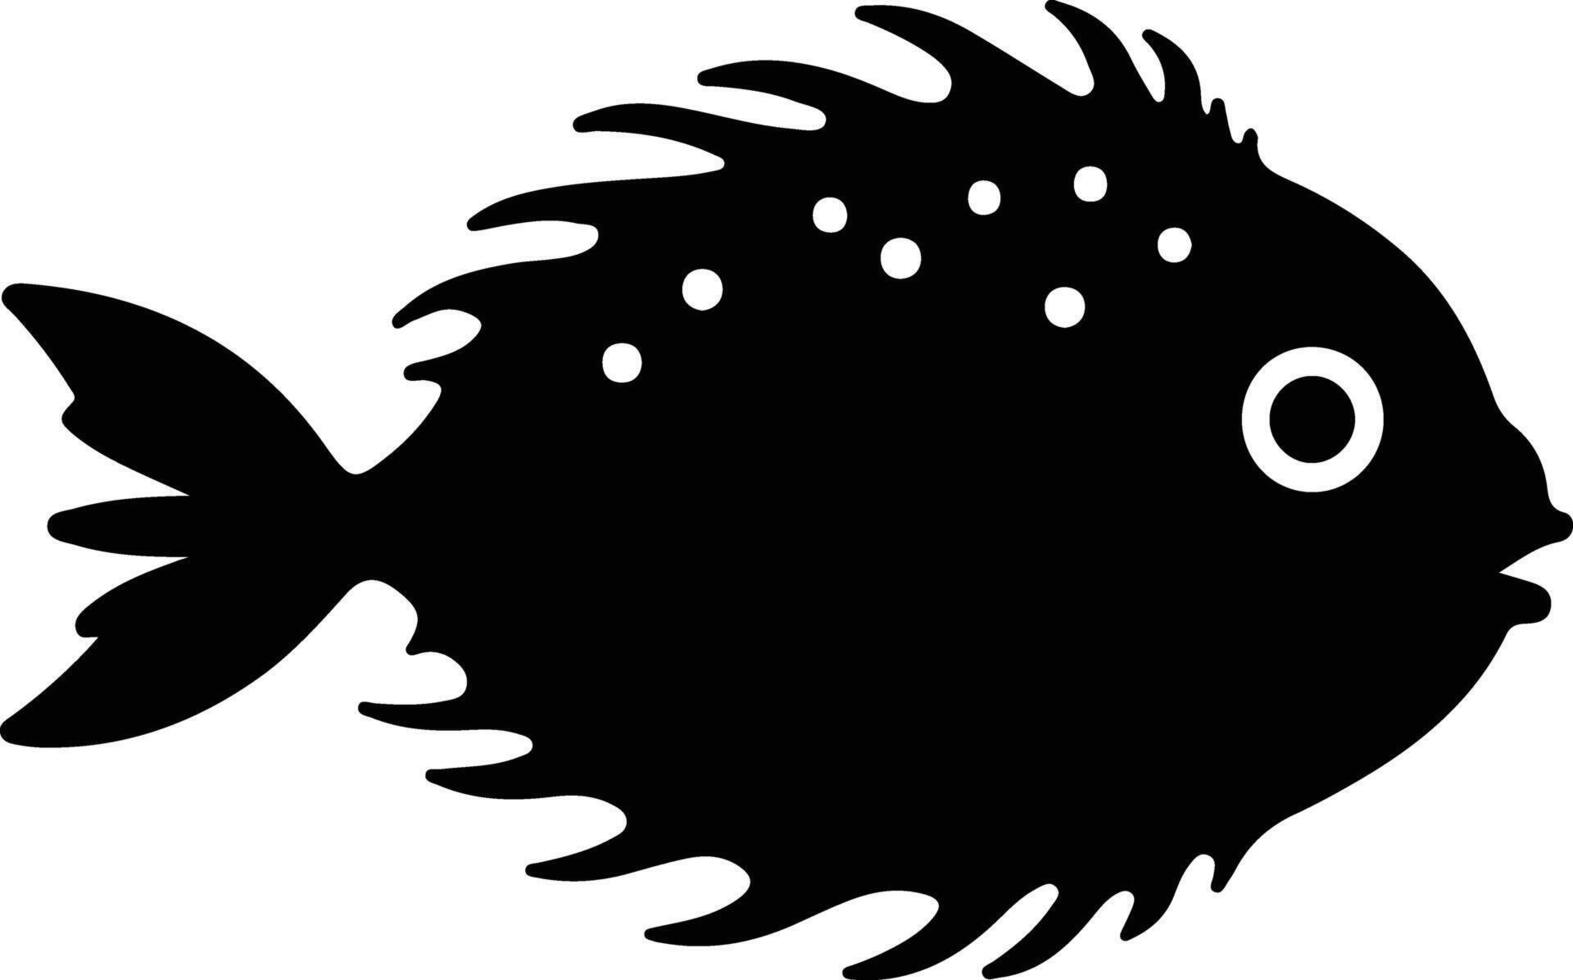 Blowfish nero silhouette vettore